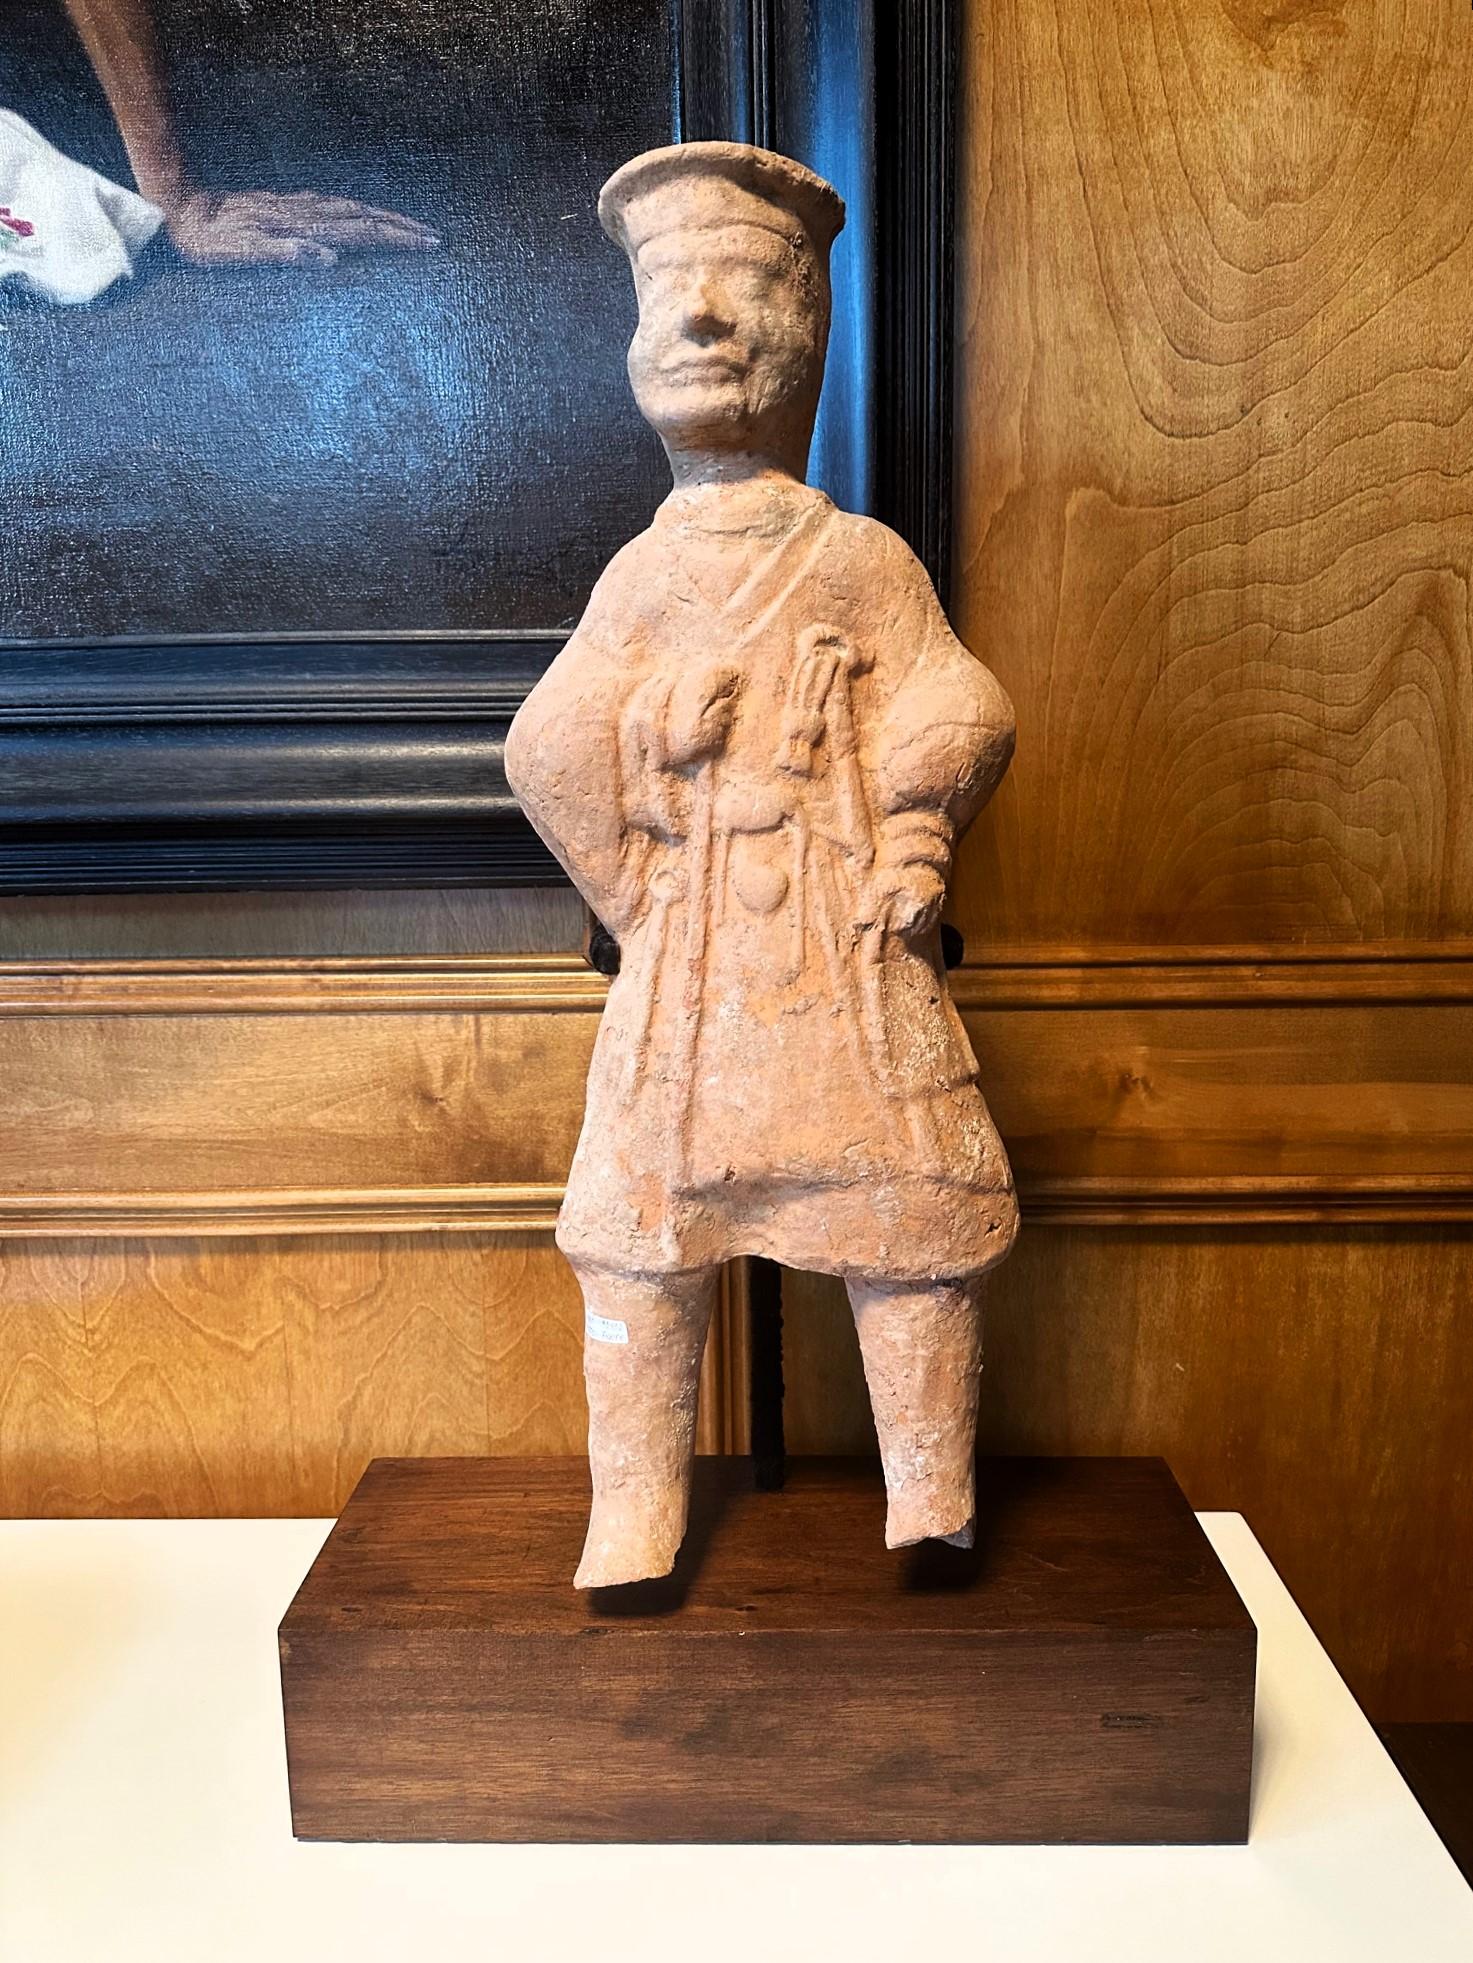 Figurine funéraire chinoise en terre cuite (Ni Yong) de la dynastie des Han de l'Est (25-220 ap. J.-C.), probablement originaire de la région de l'actuel Sichuan. Elle semble représenter un palefrenier avec des vêtements et un harnais à la main.